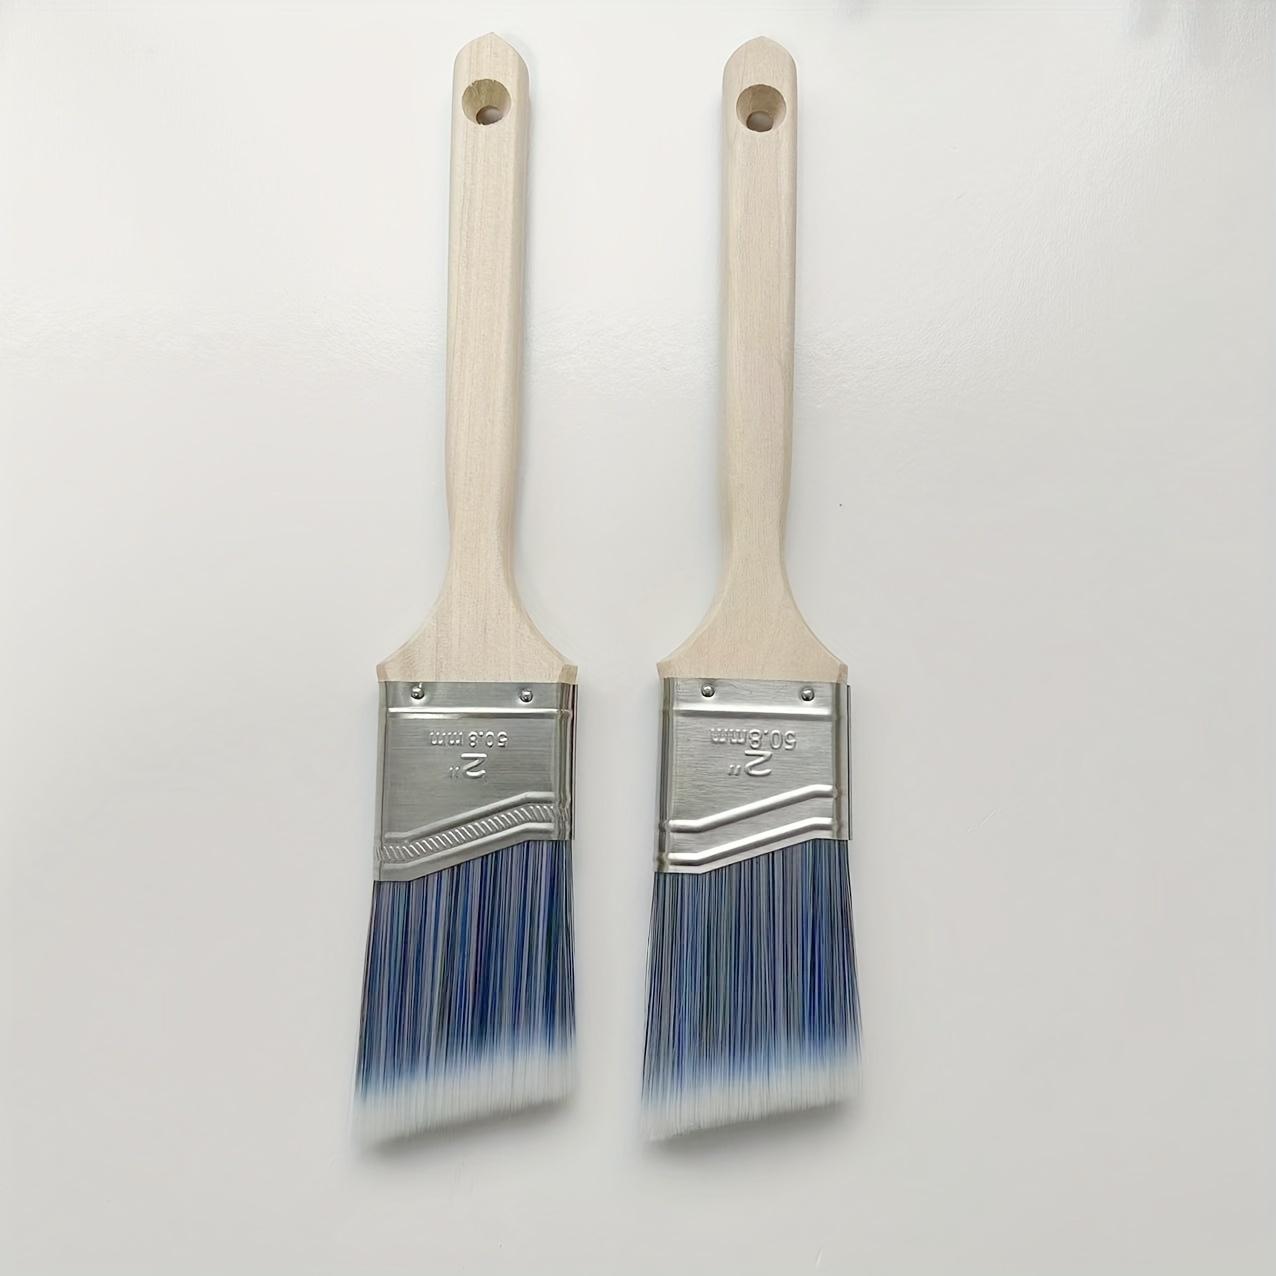 2 Inch Angled Edge Paintbrush